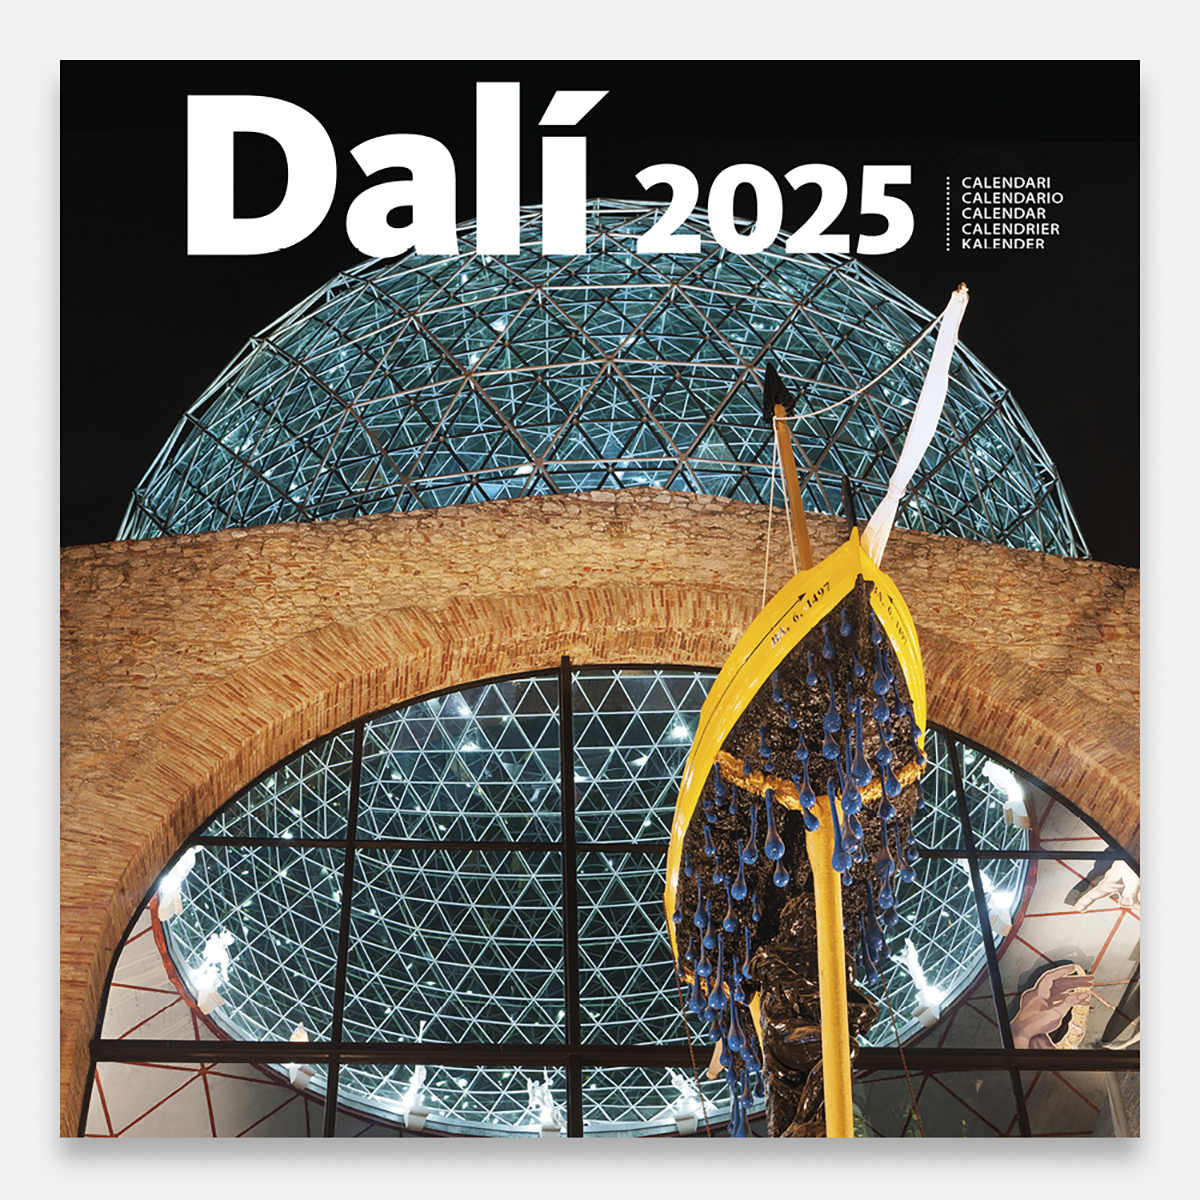 Calendar 2025 Dalí 25dg calendario pared 2025 salvador dali